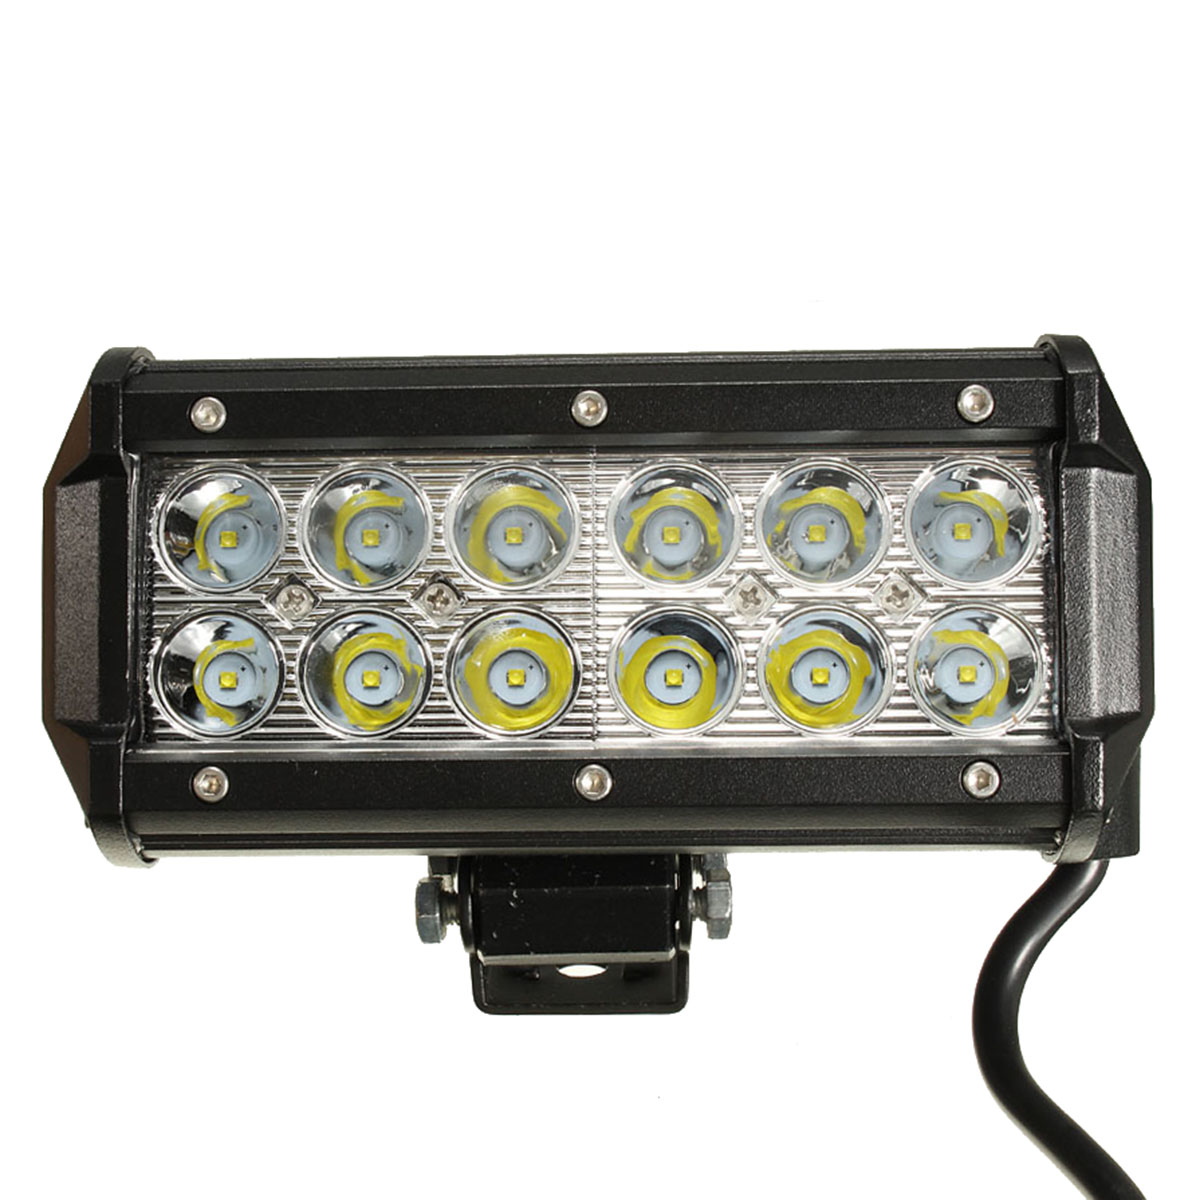 6.5Inch LED Work Light Bar Spot Beam 10-30V 36W White for off Road Ute ATV UTE SUV